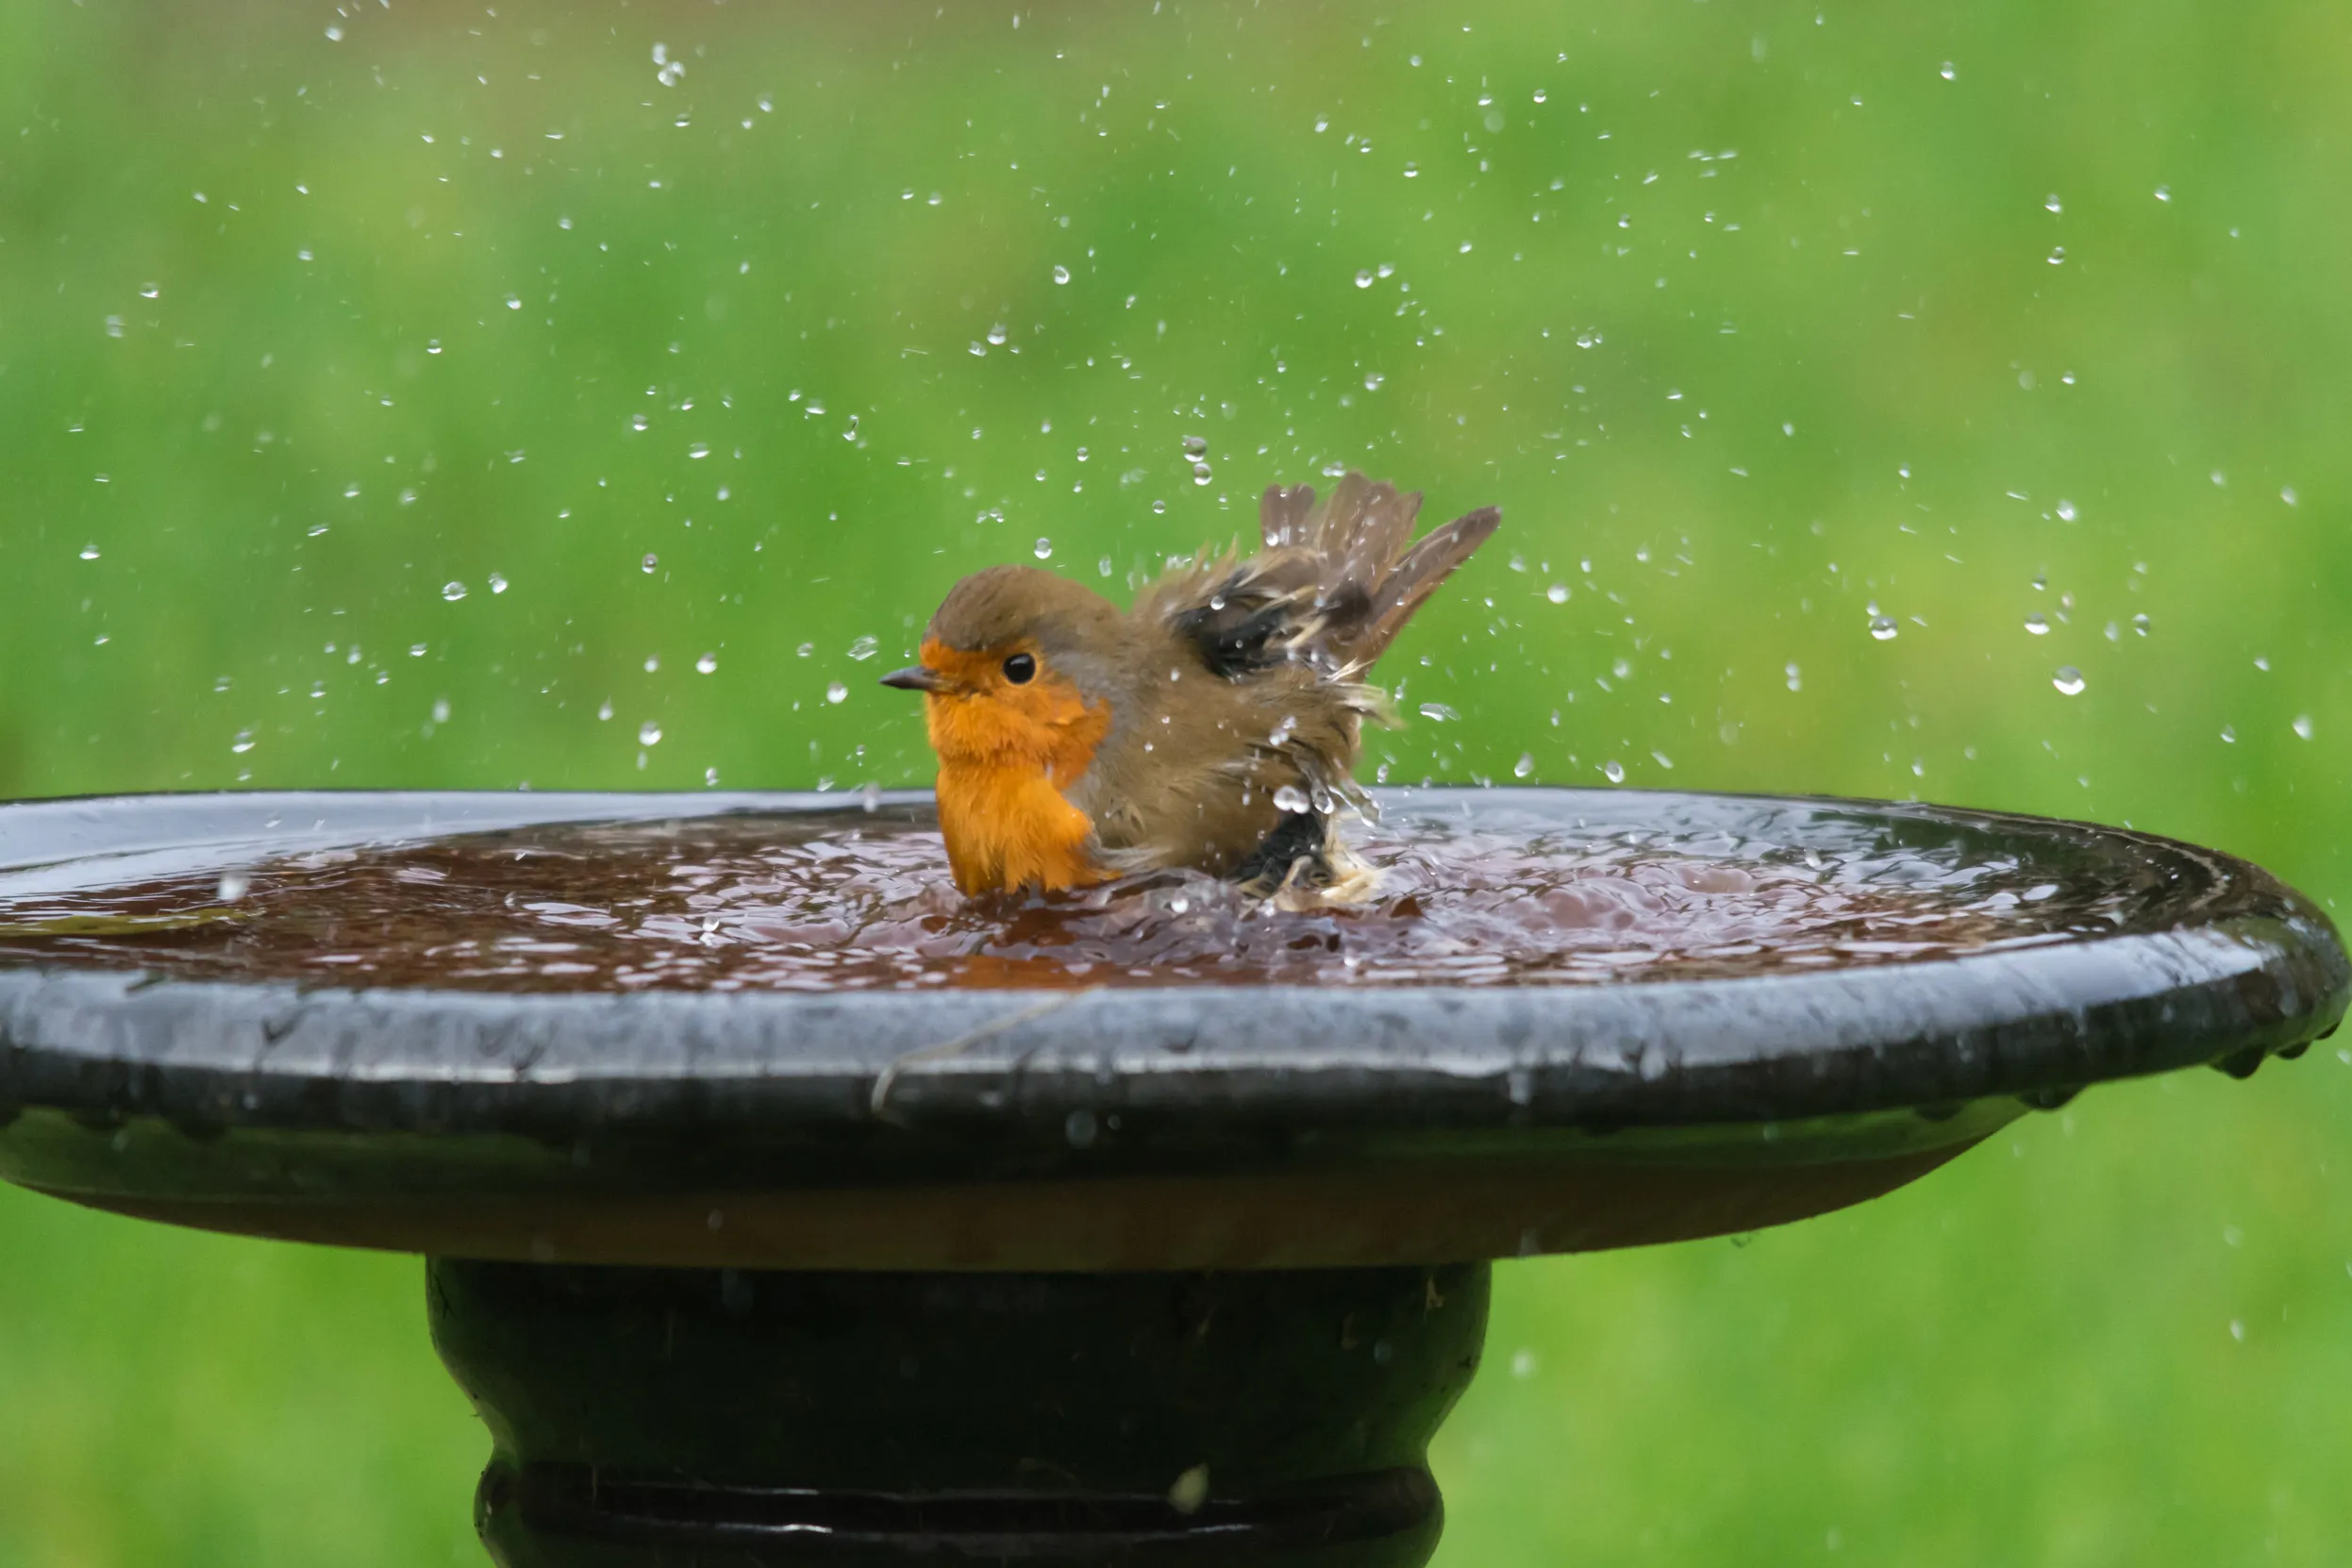 A Robin bathing in a birdbath.